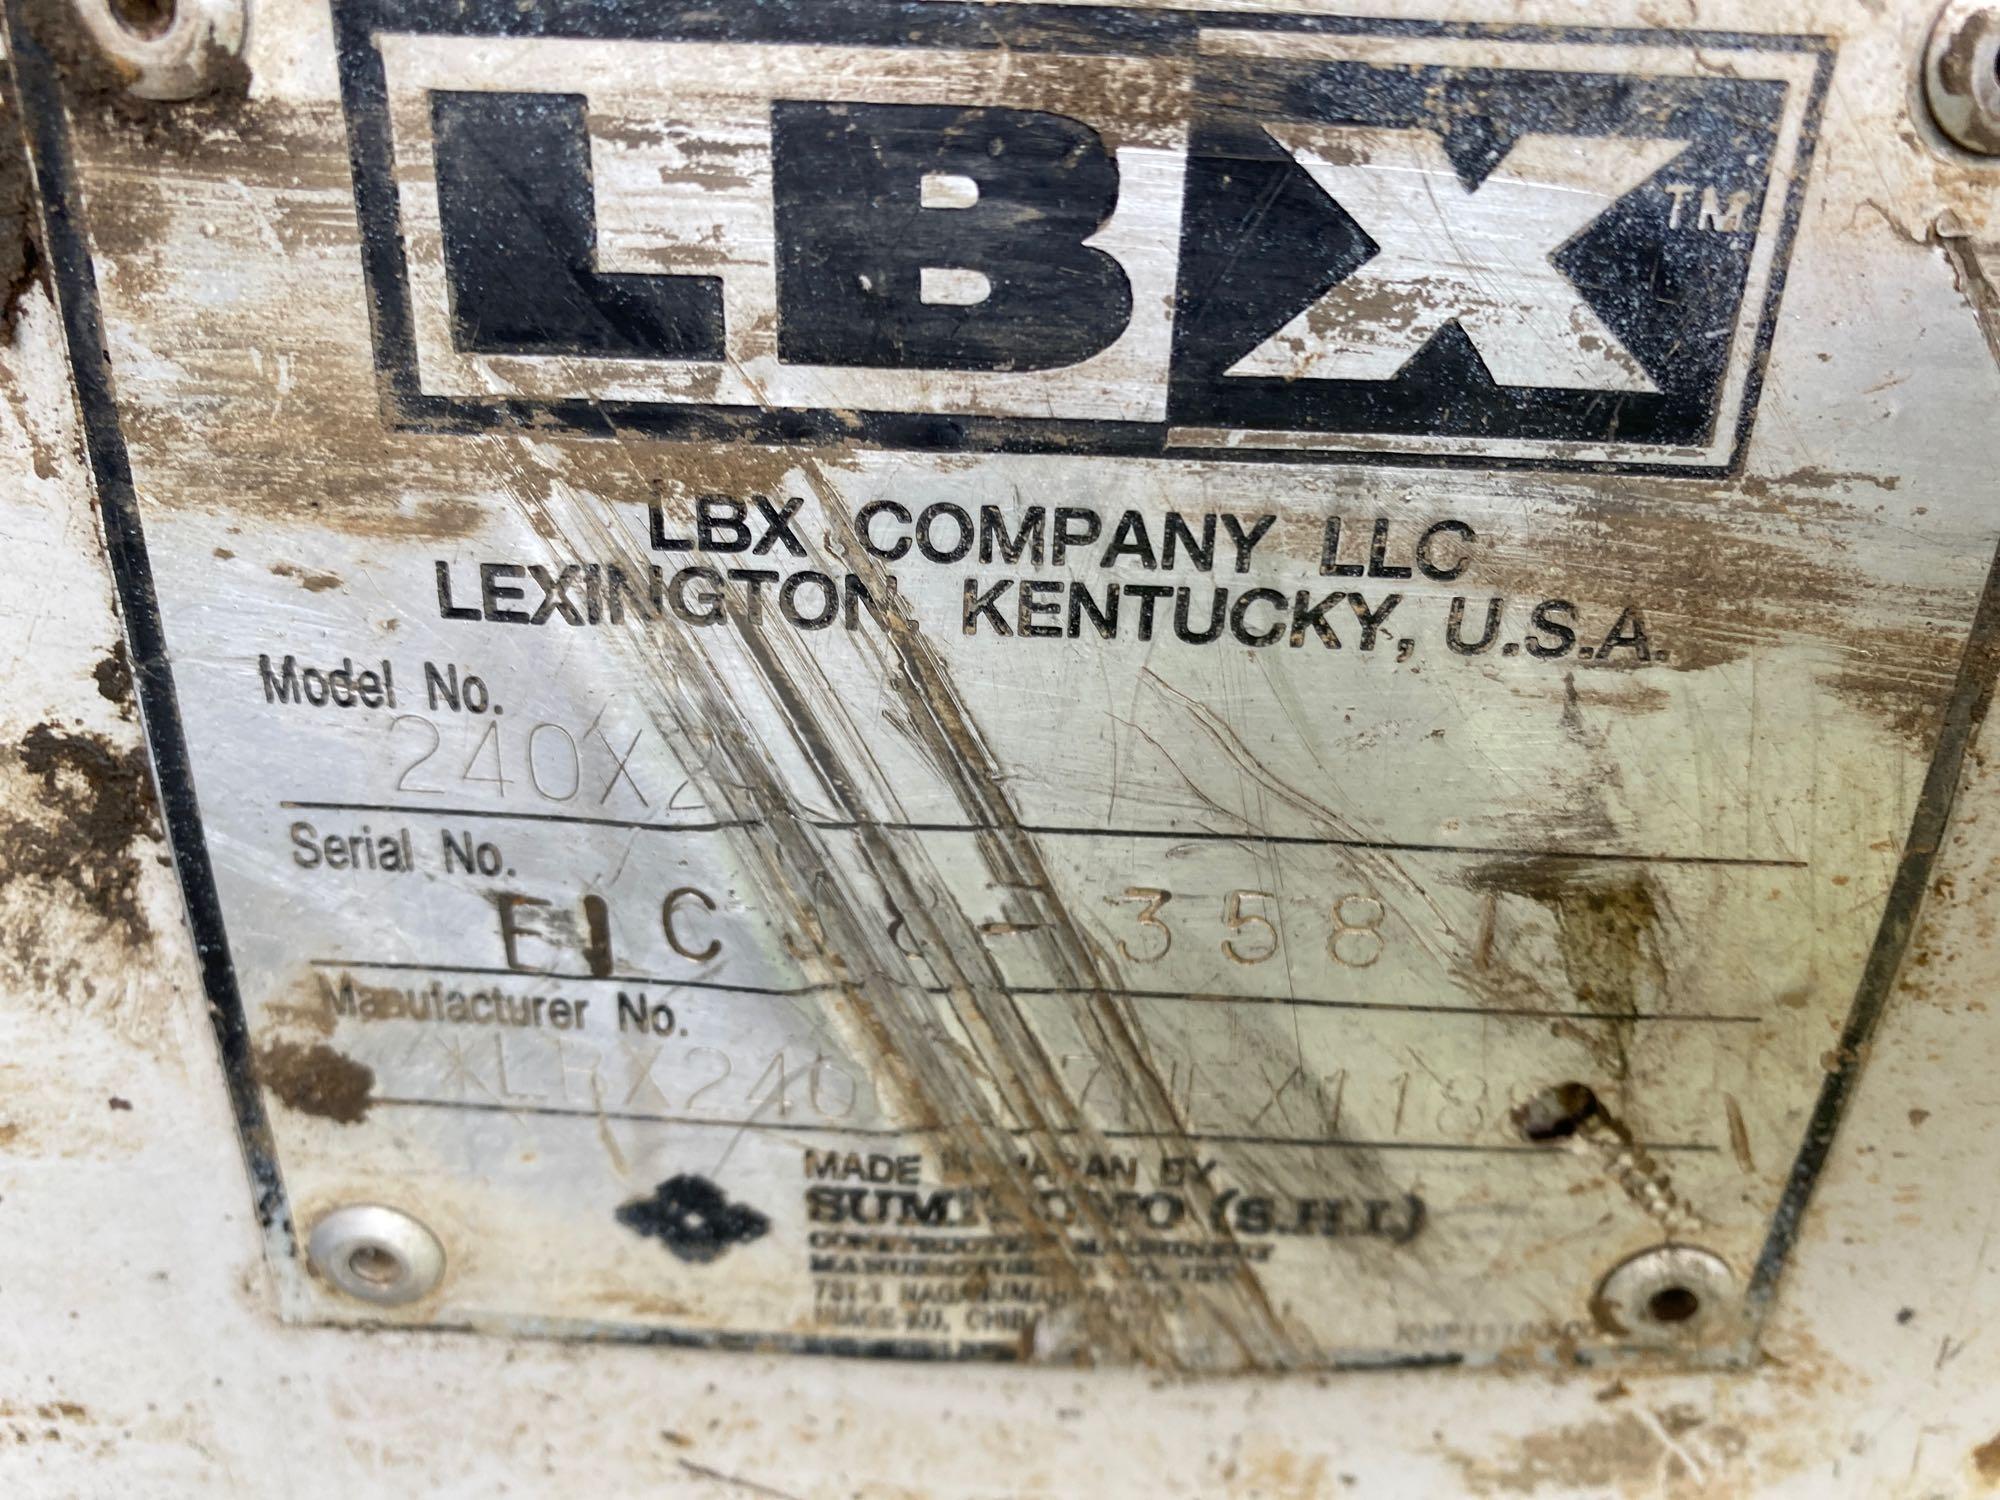 Link-Belt 240-X2 Excavator